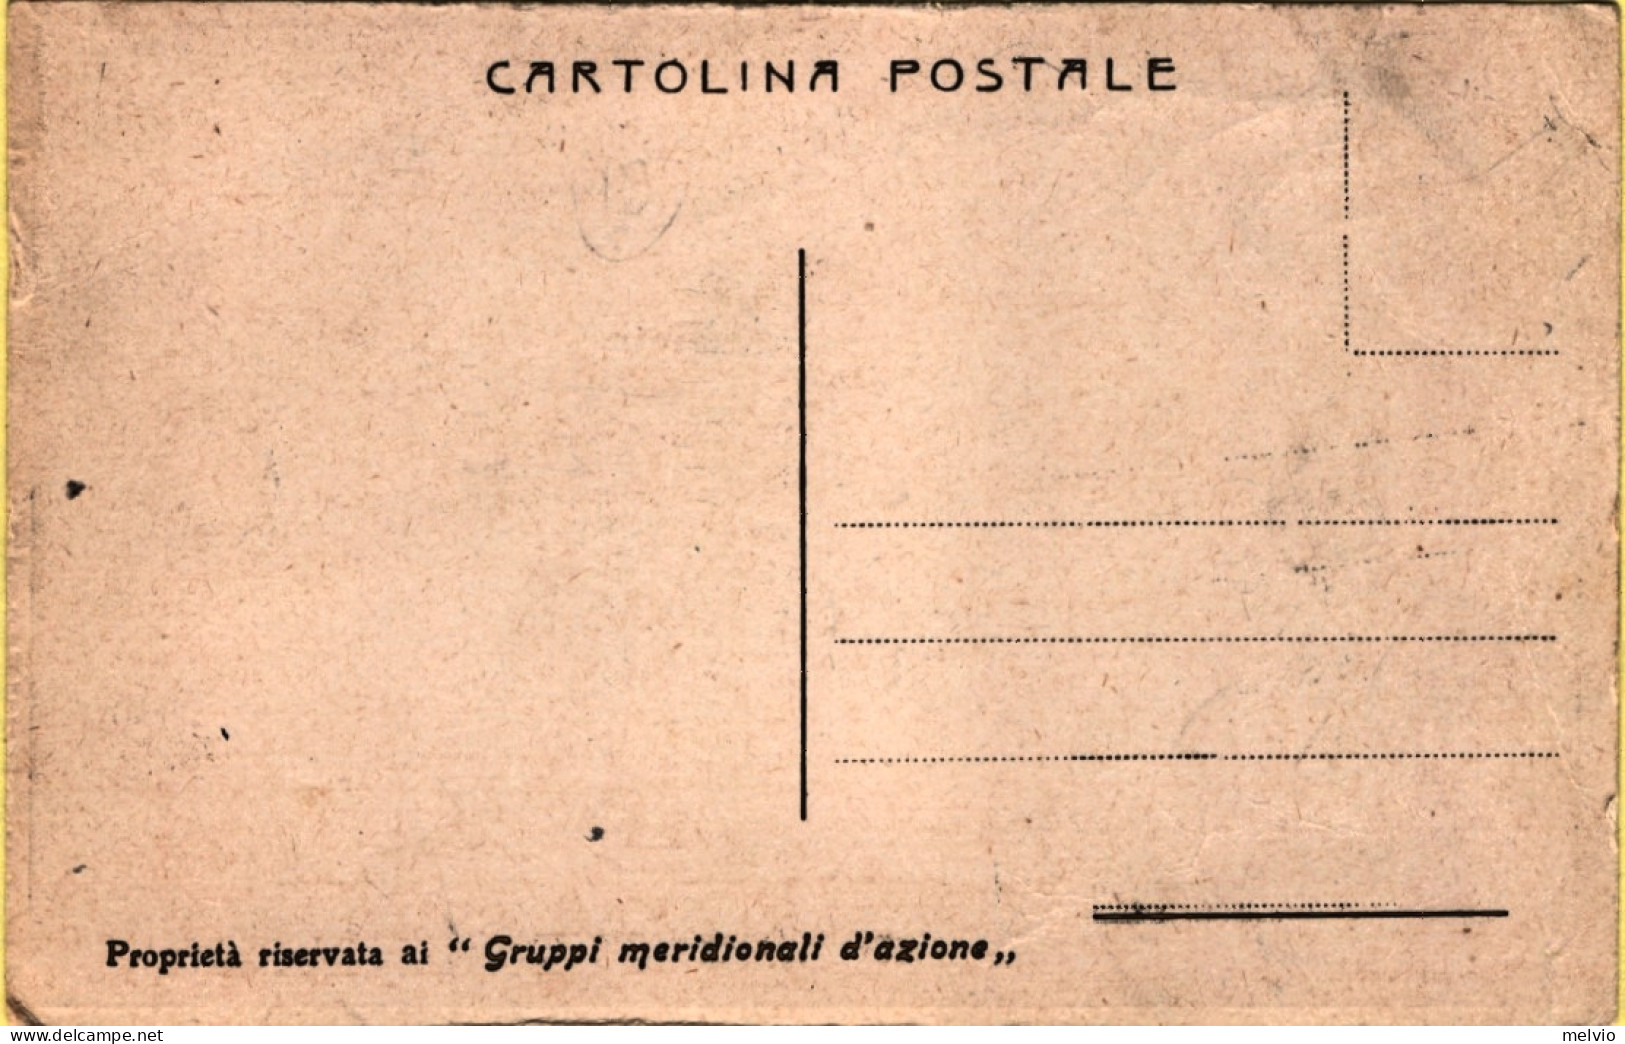 1950circa-Dazi Doganali Protettivi, Redenzione Cartolina A Cura Dei Gruppi Merid - Publicidad